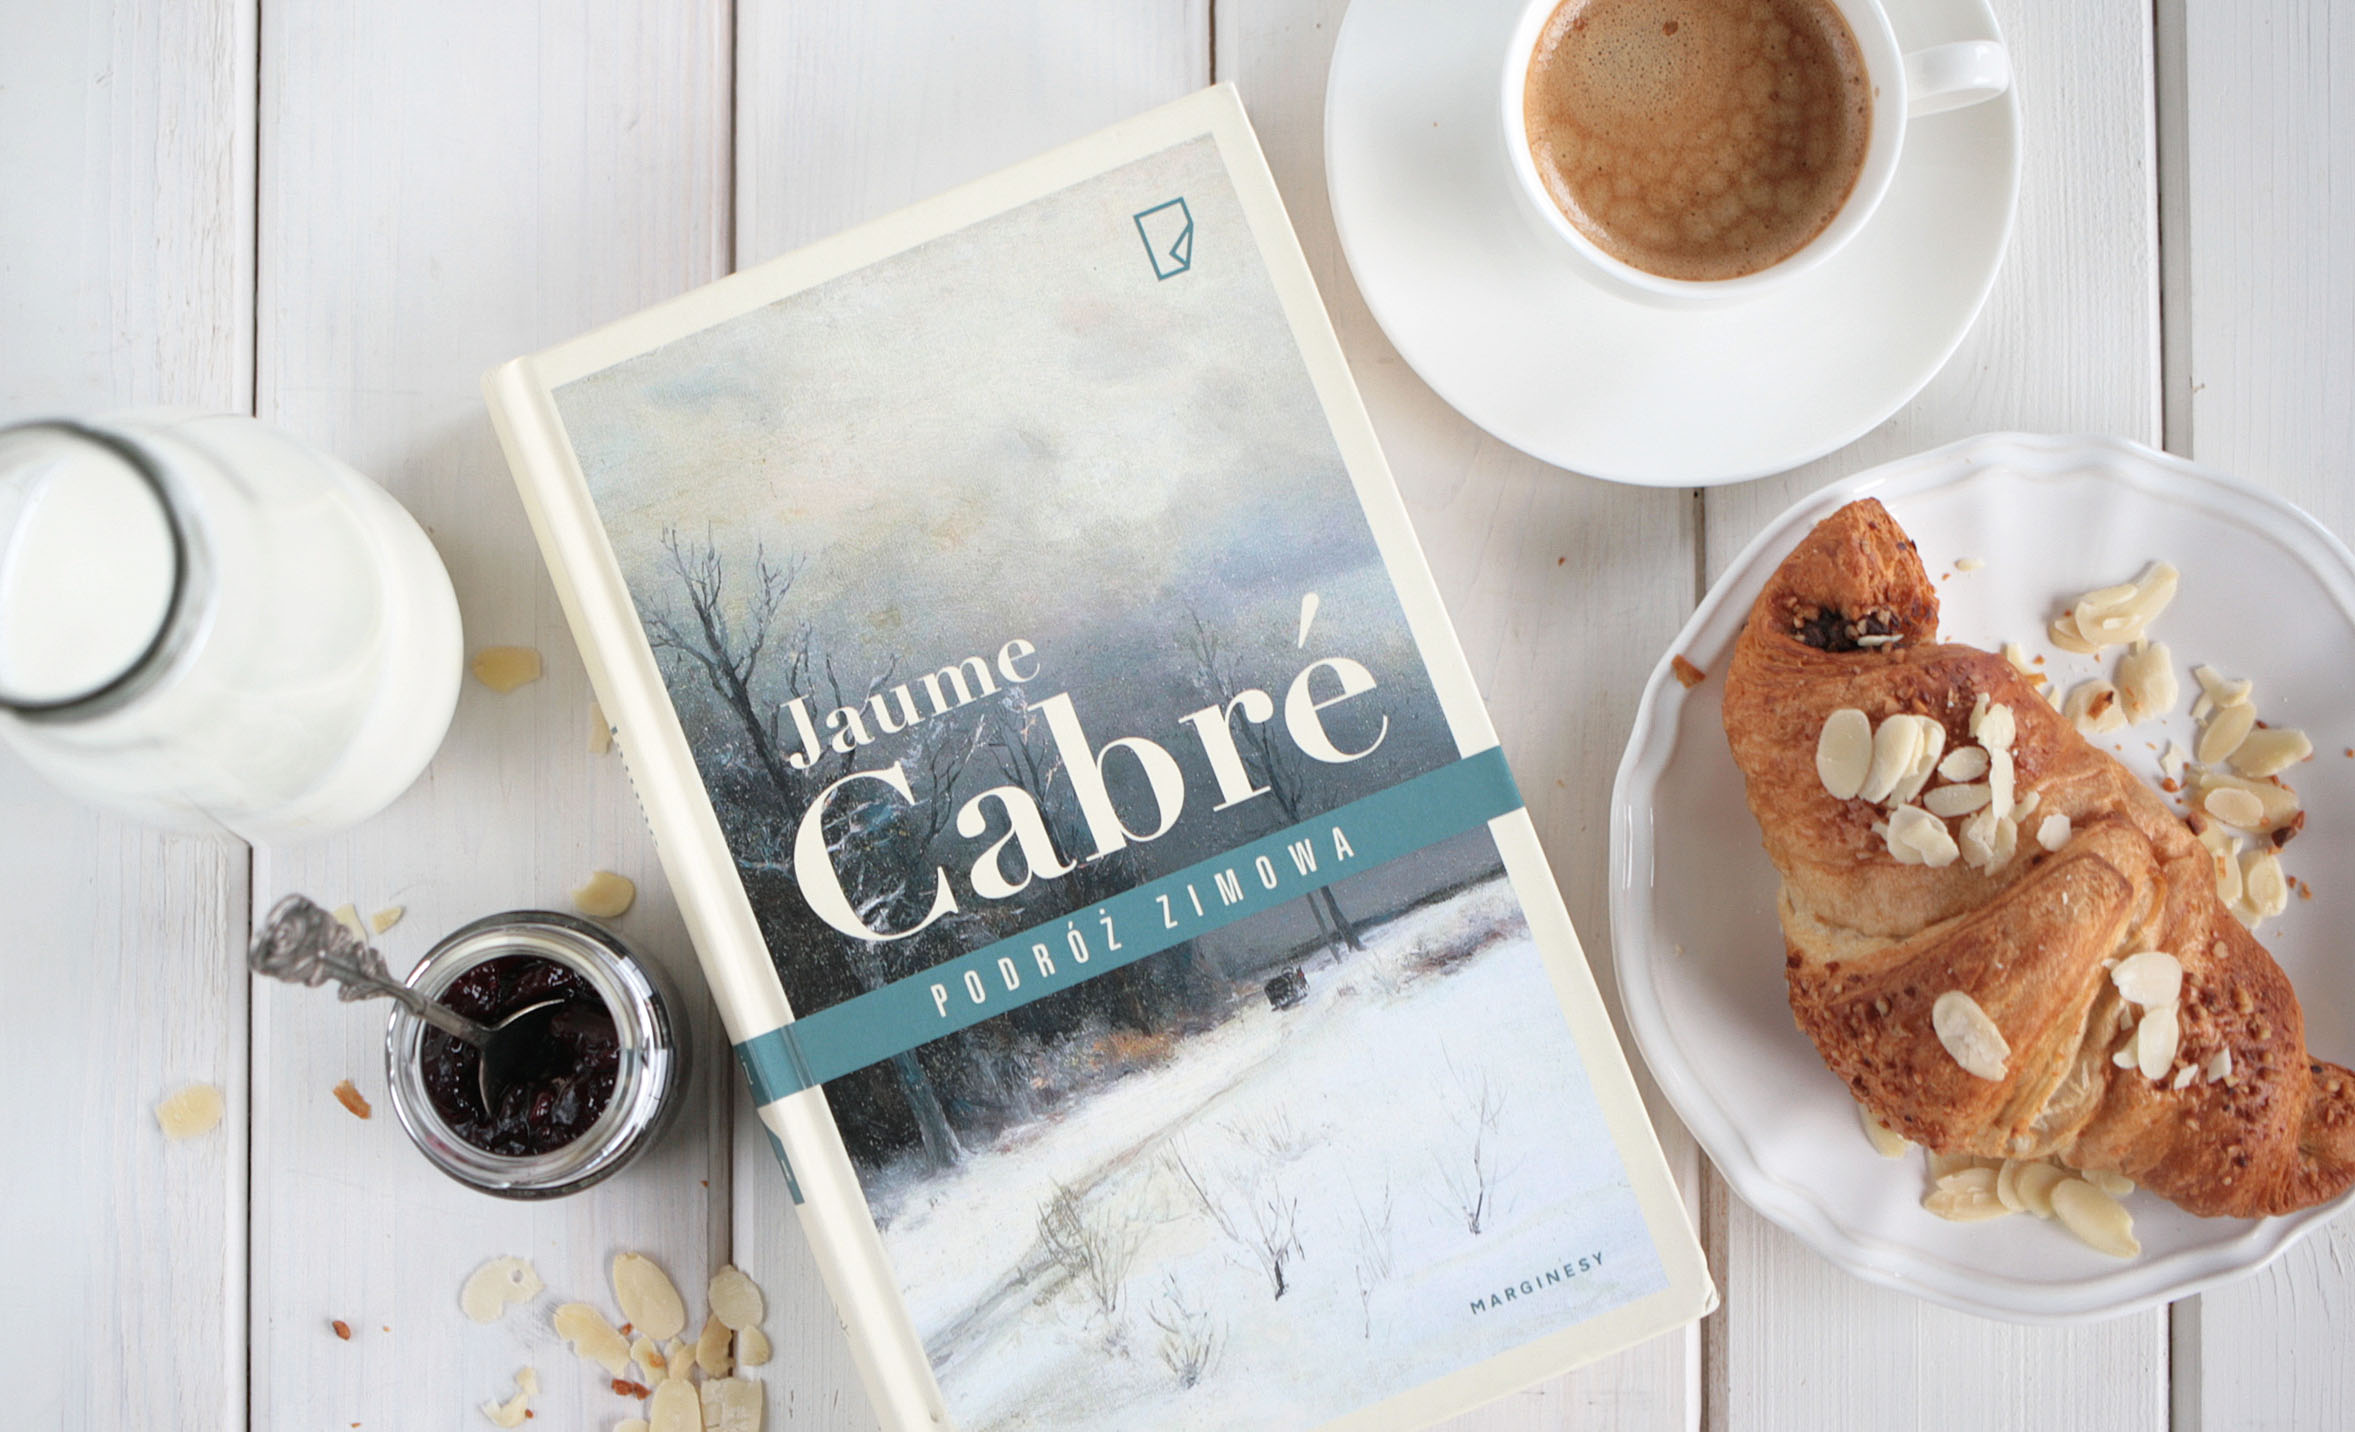 Podróż zimowa Jaume Cabre